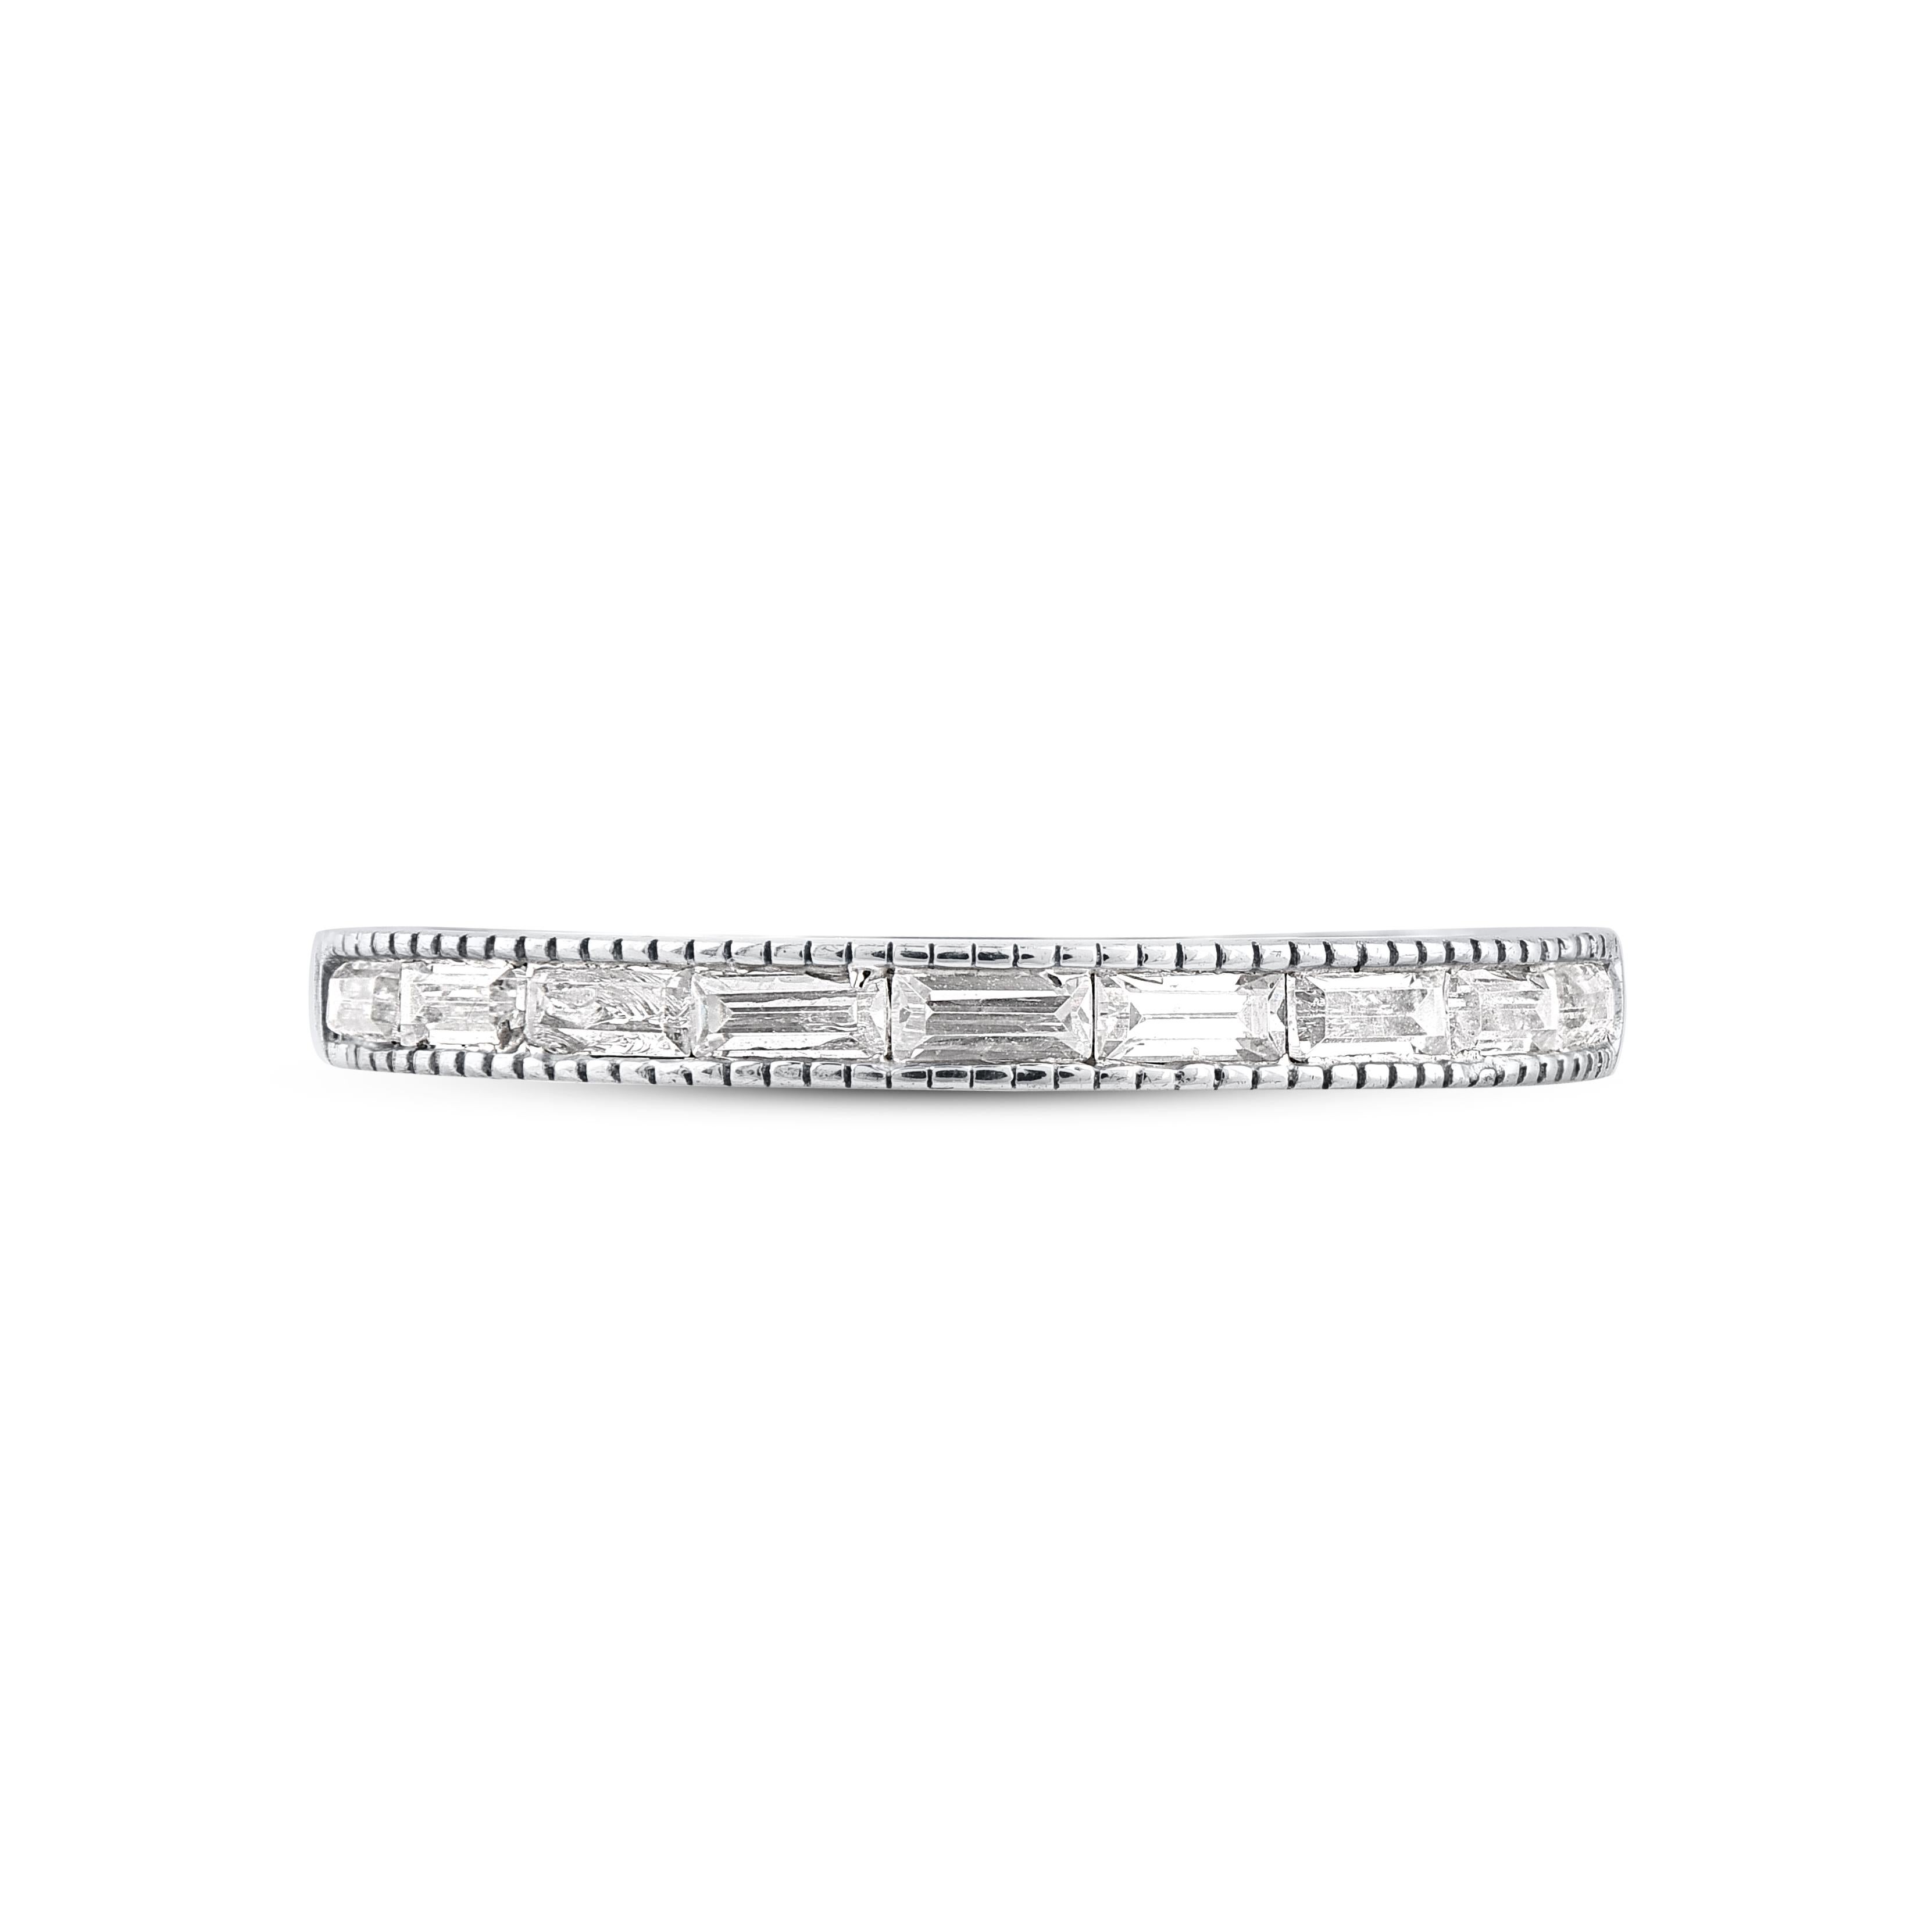 Ehren Sie Ihren besonderen Tag mit diesem außergewöhnlichen Diamantring. Dieser Ring ist mit 9 funkelnden Baguette-Diamanten in einer schönen Kanalfassung besetzt. Das Gesamtgewicht der Diamanten beträgt 0,33 Karat. Die Diamanten sind mit der Farbe